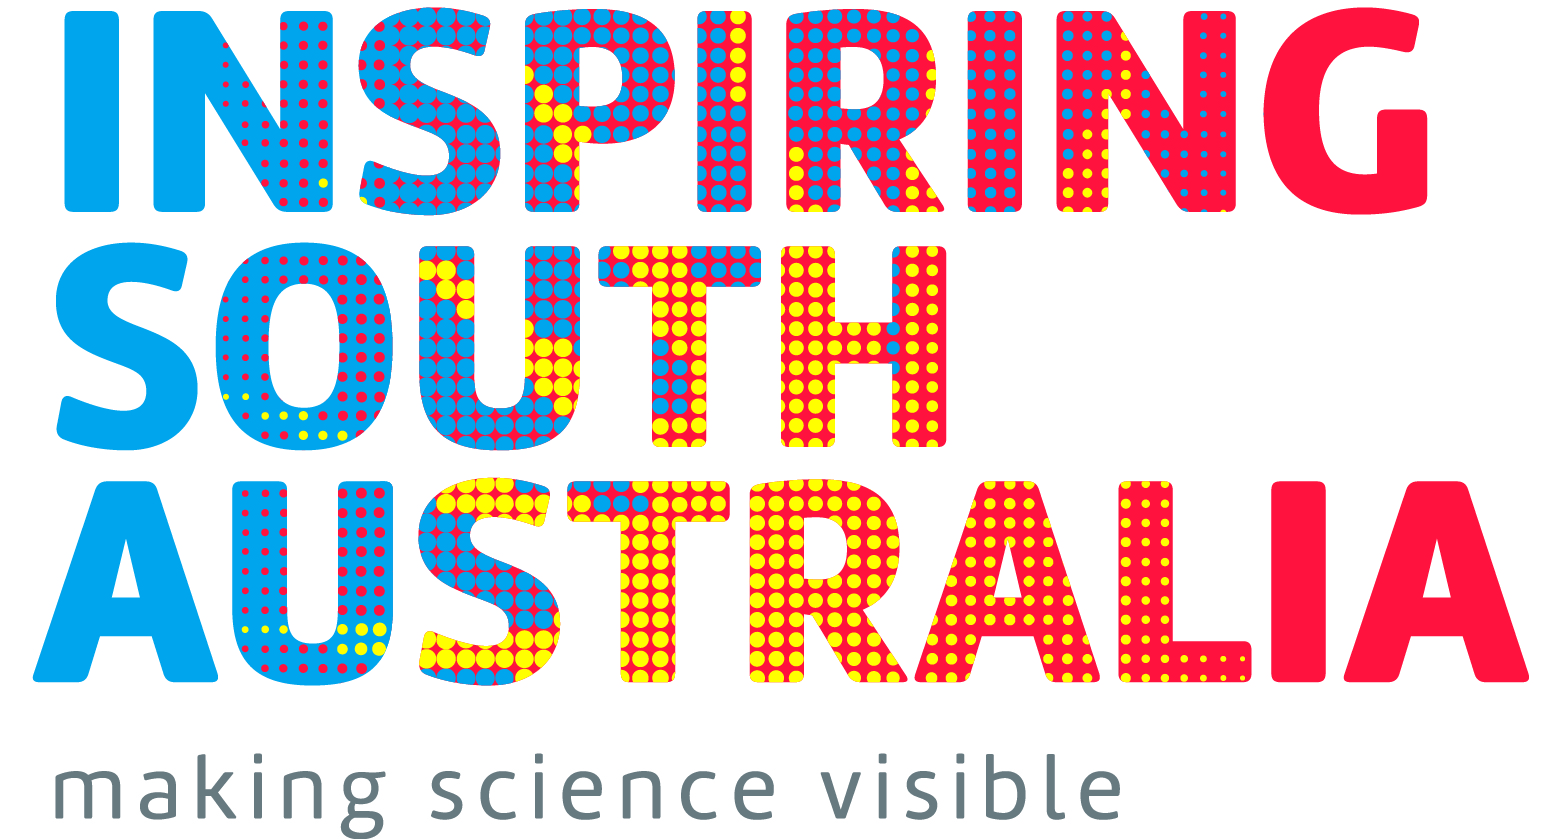 Inspiring South Australia Logo